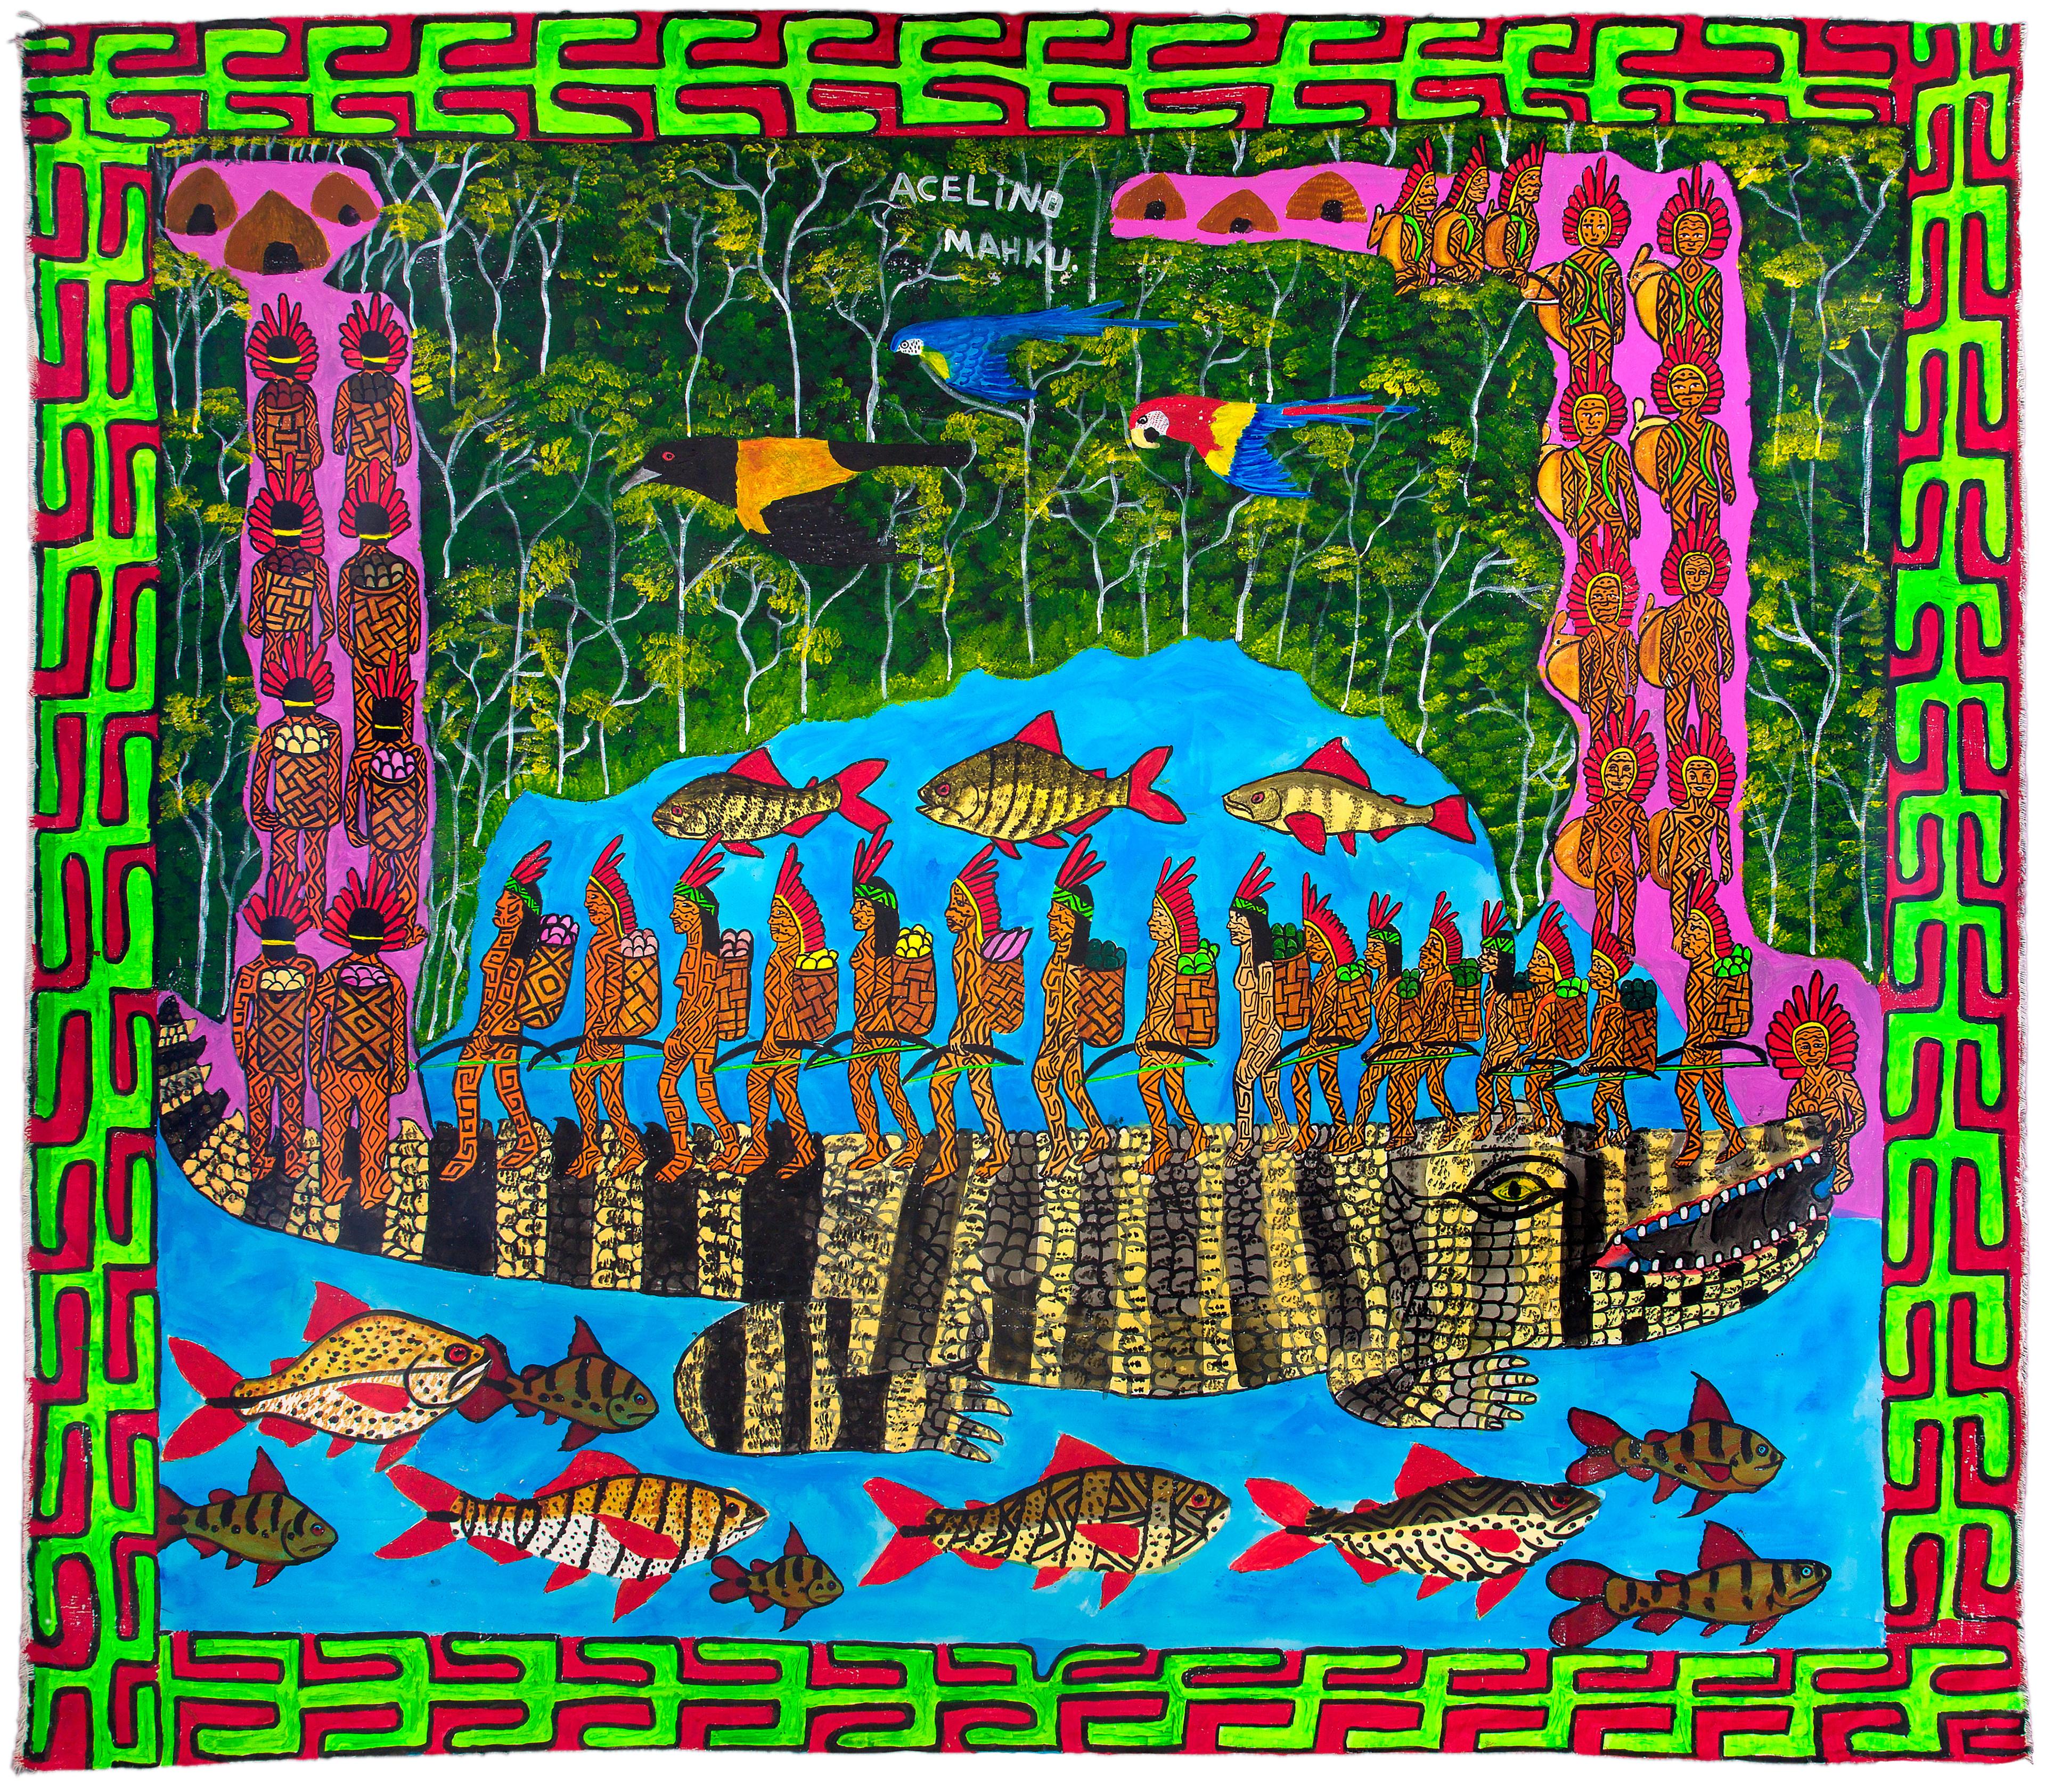 Et fargerikt maleri av en gruppe mennesker som spaserer over en aligator som fungerer som en stor bro over et vann fullt av fisk.